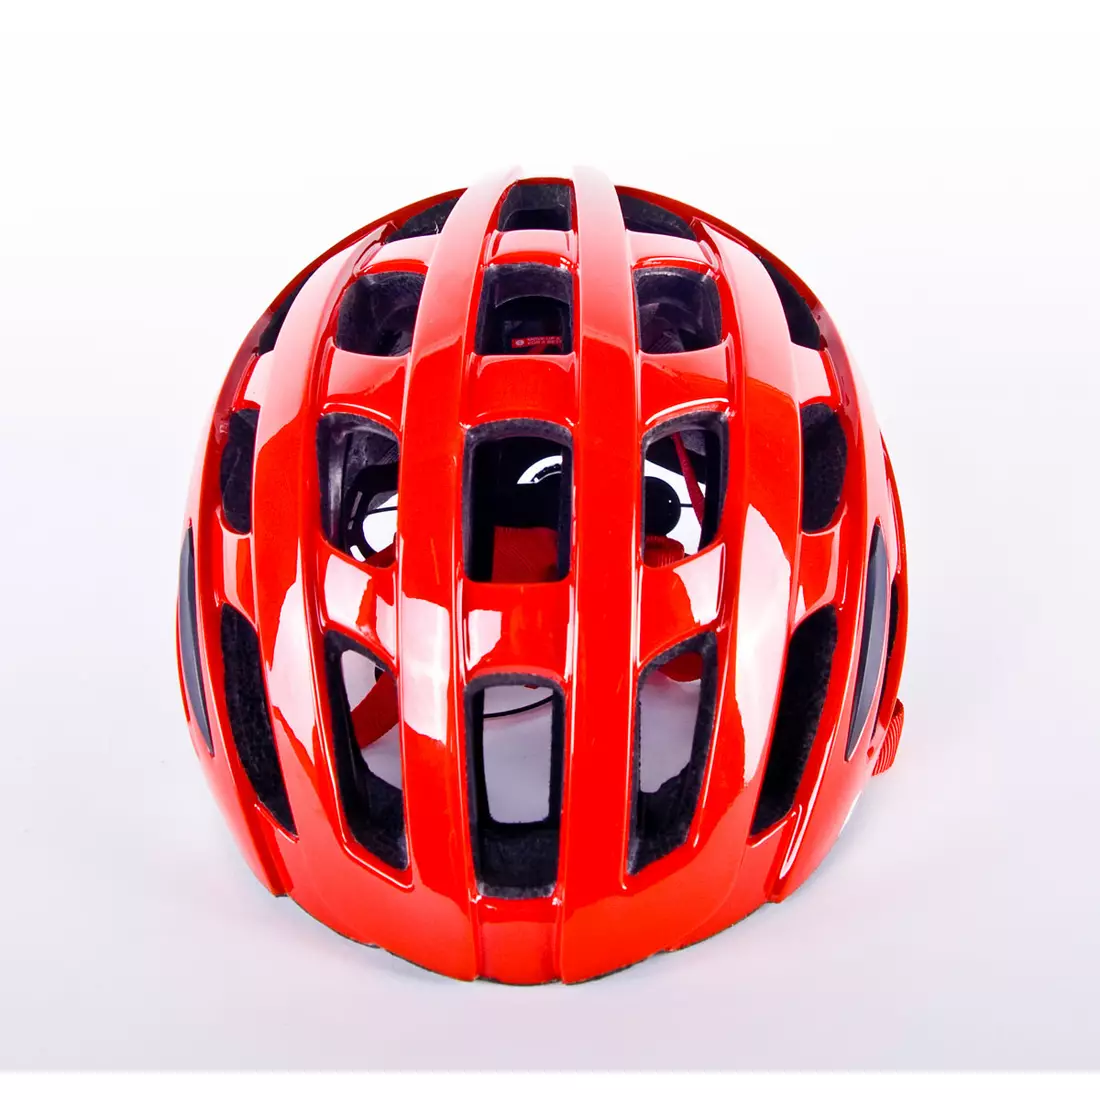 LAZER TONIC Cască de bicicletă de șosea TS+ roșu lucios